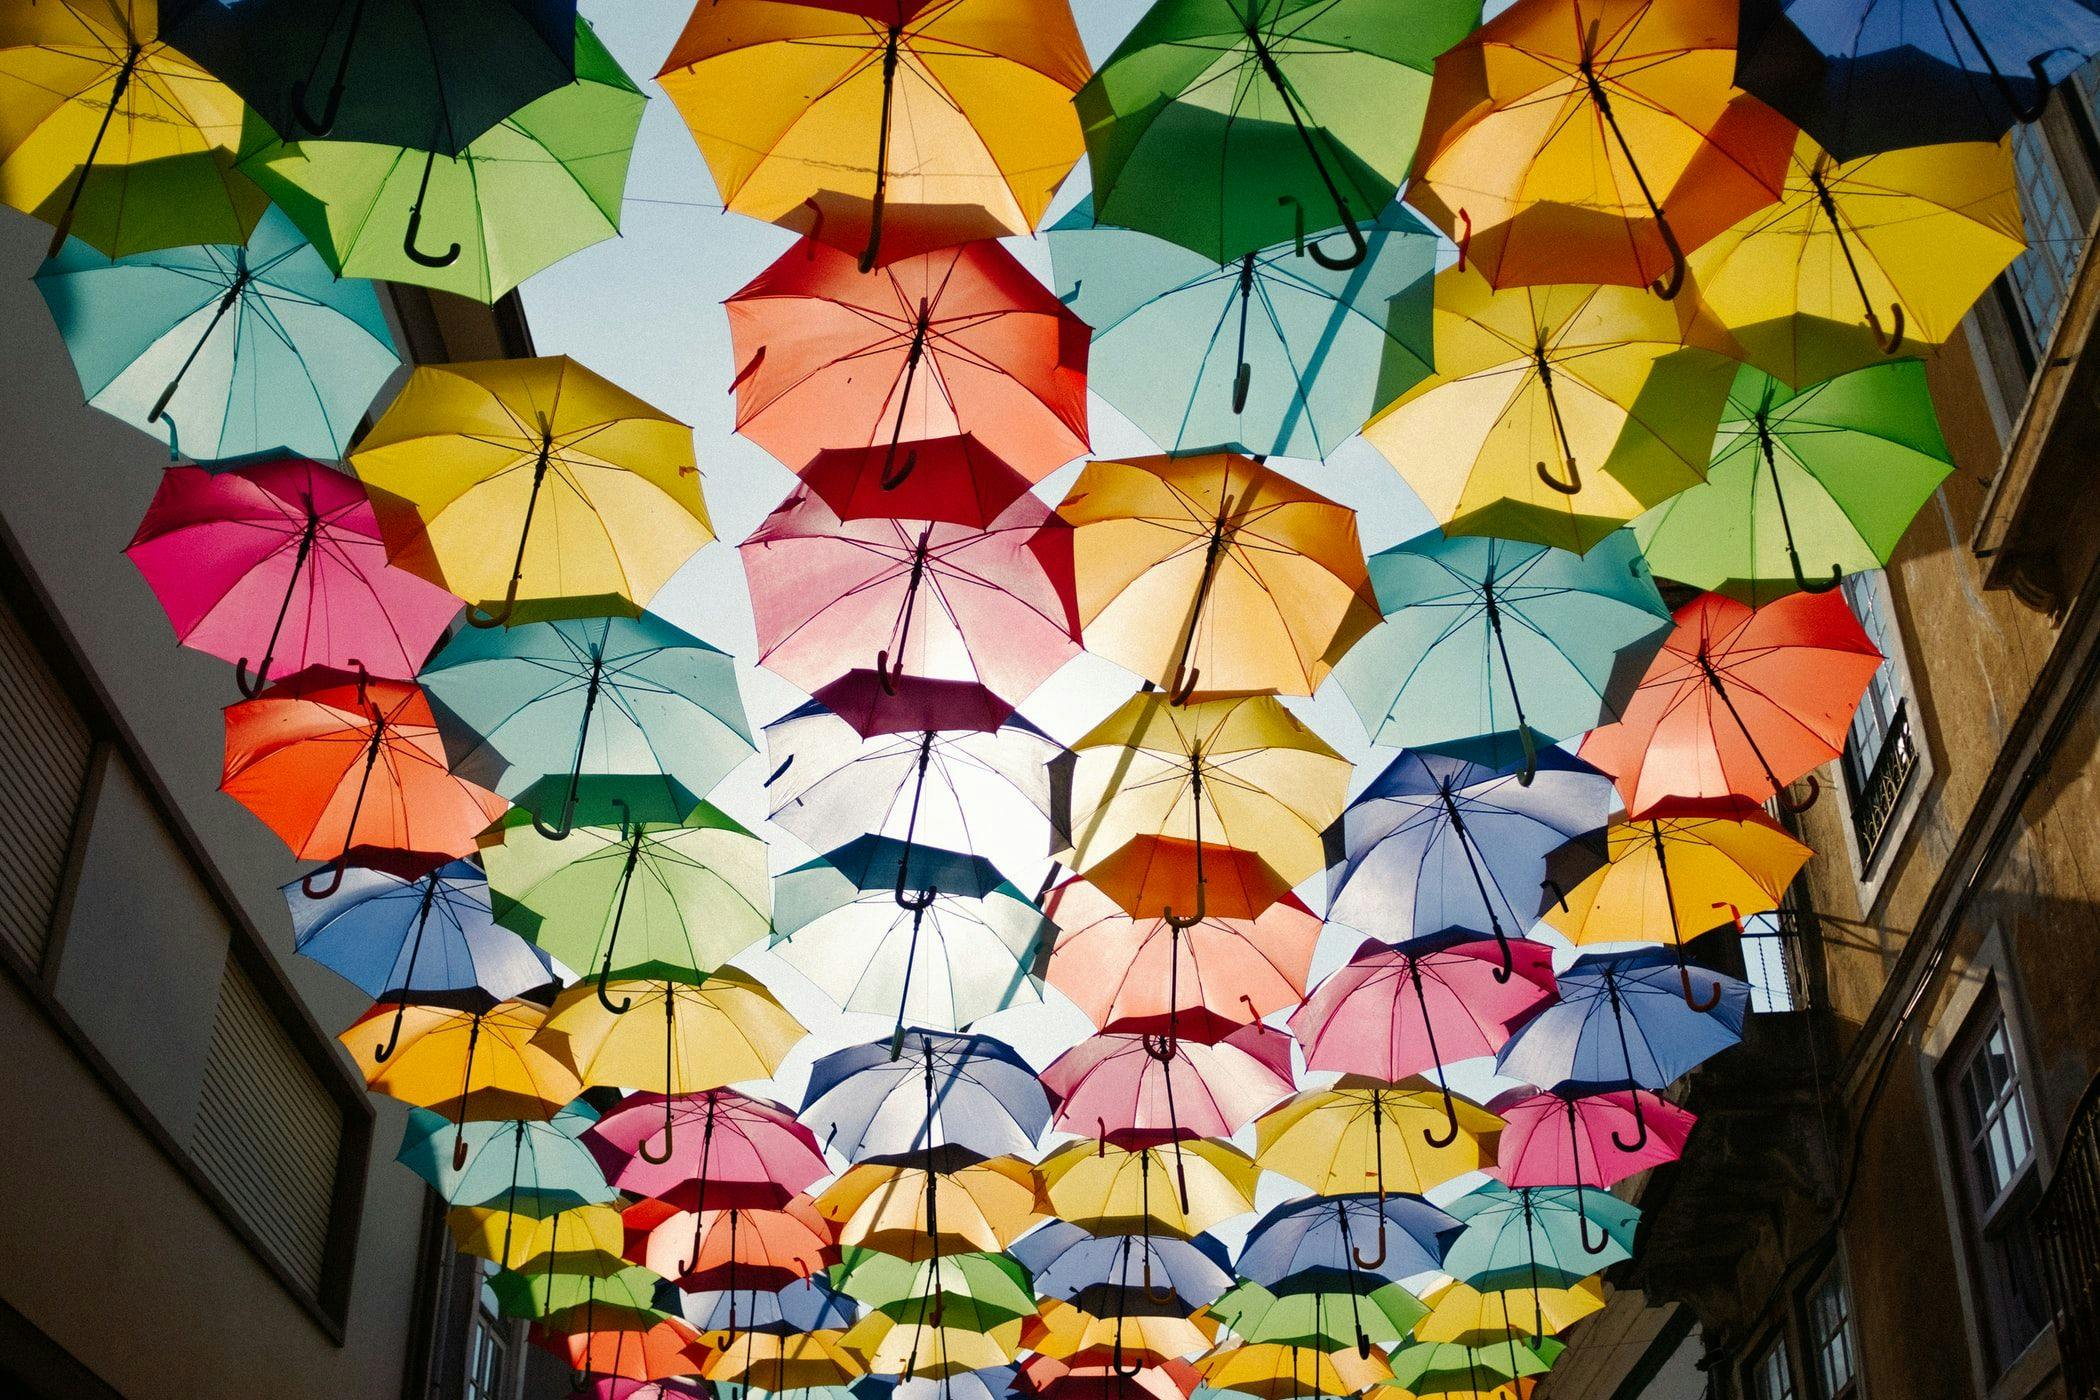 Umbrella.jpeg